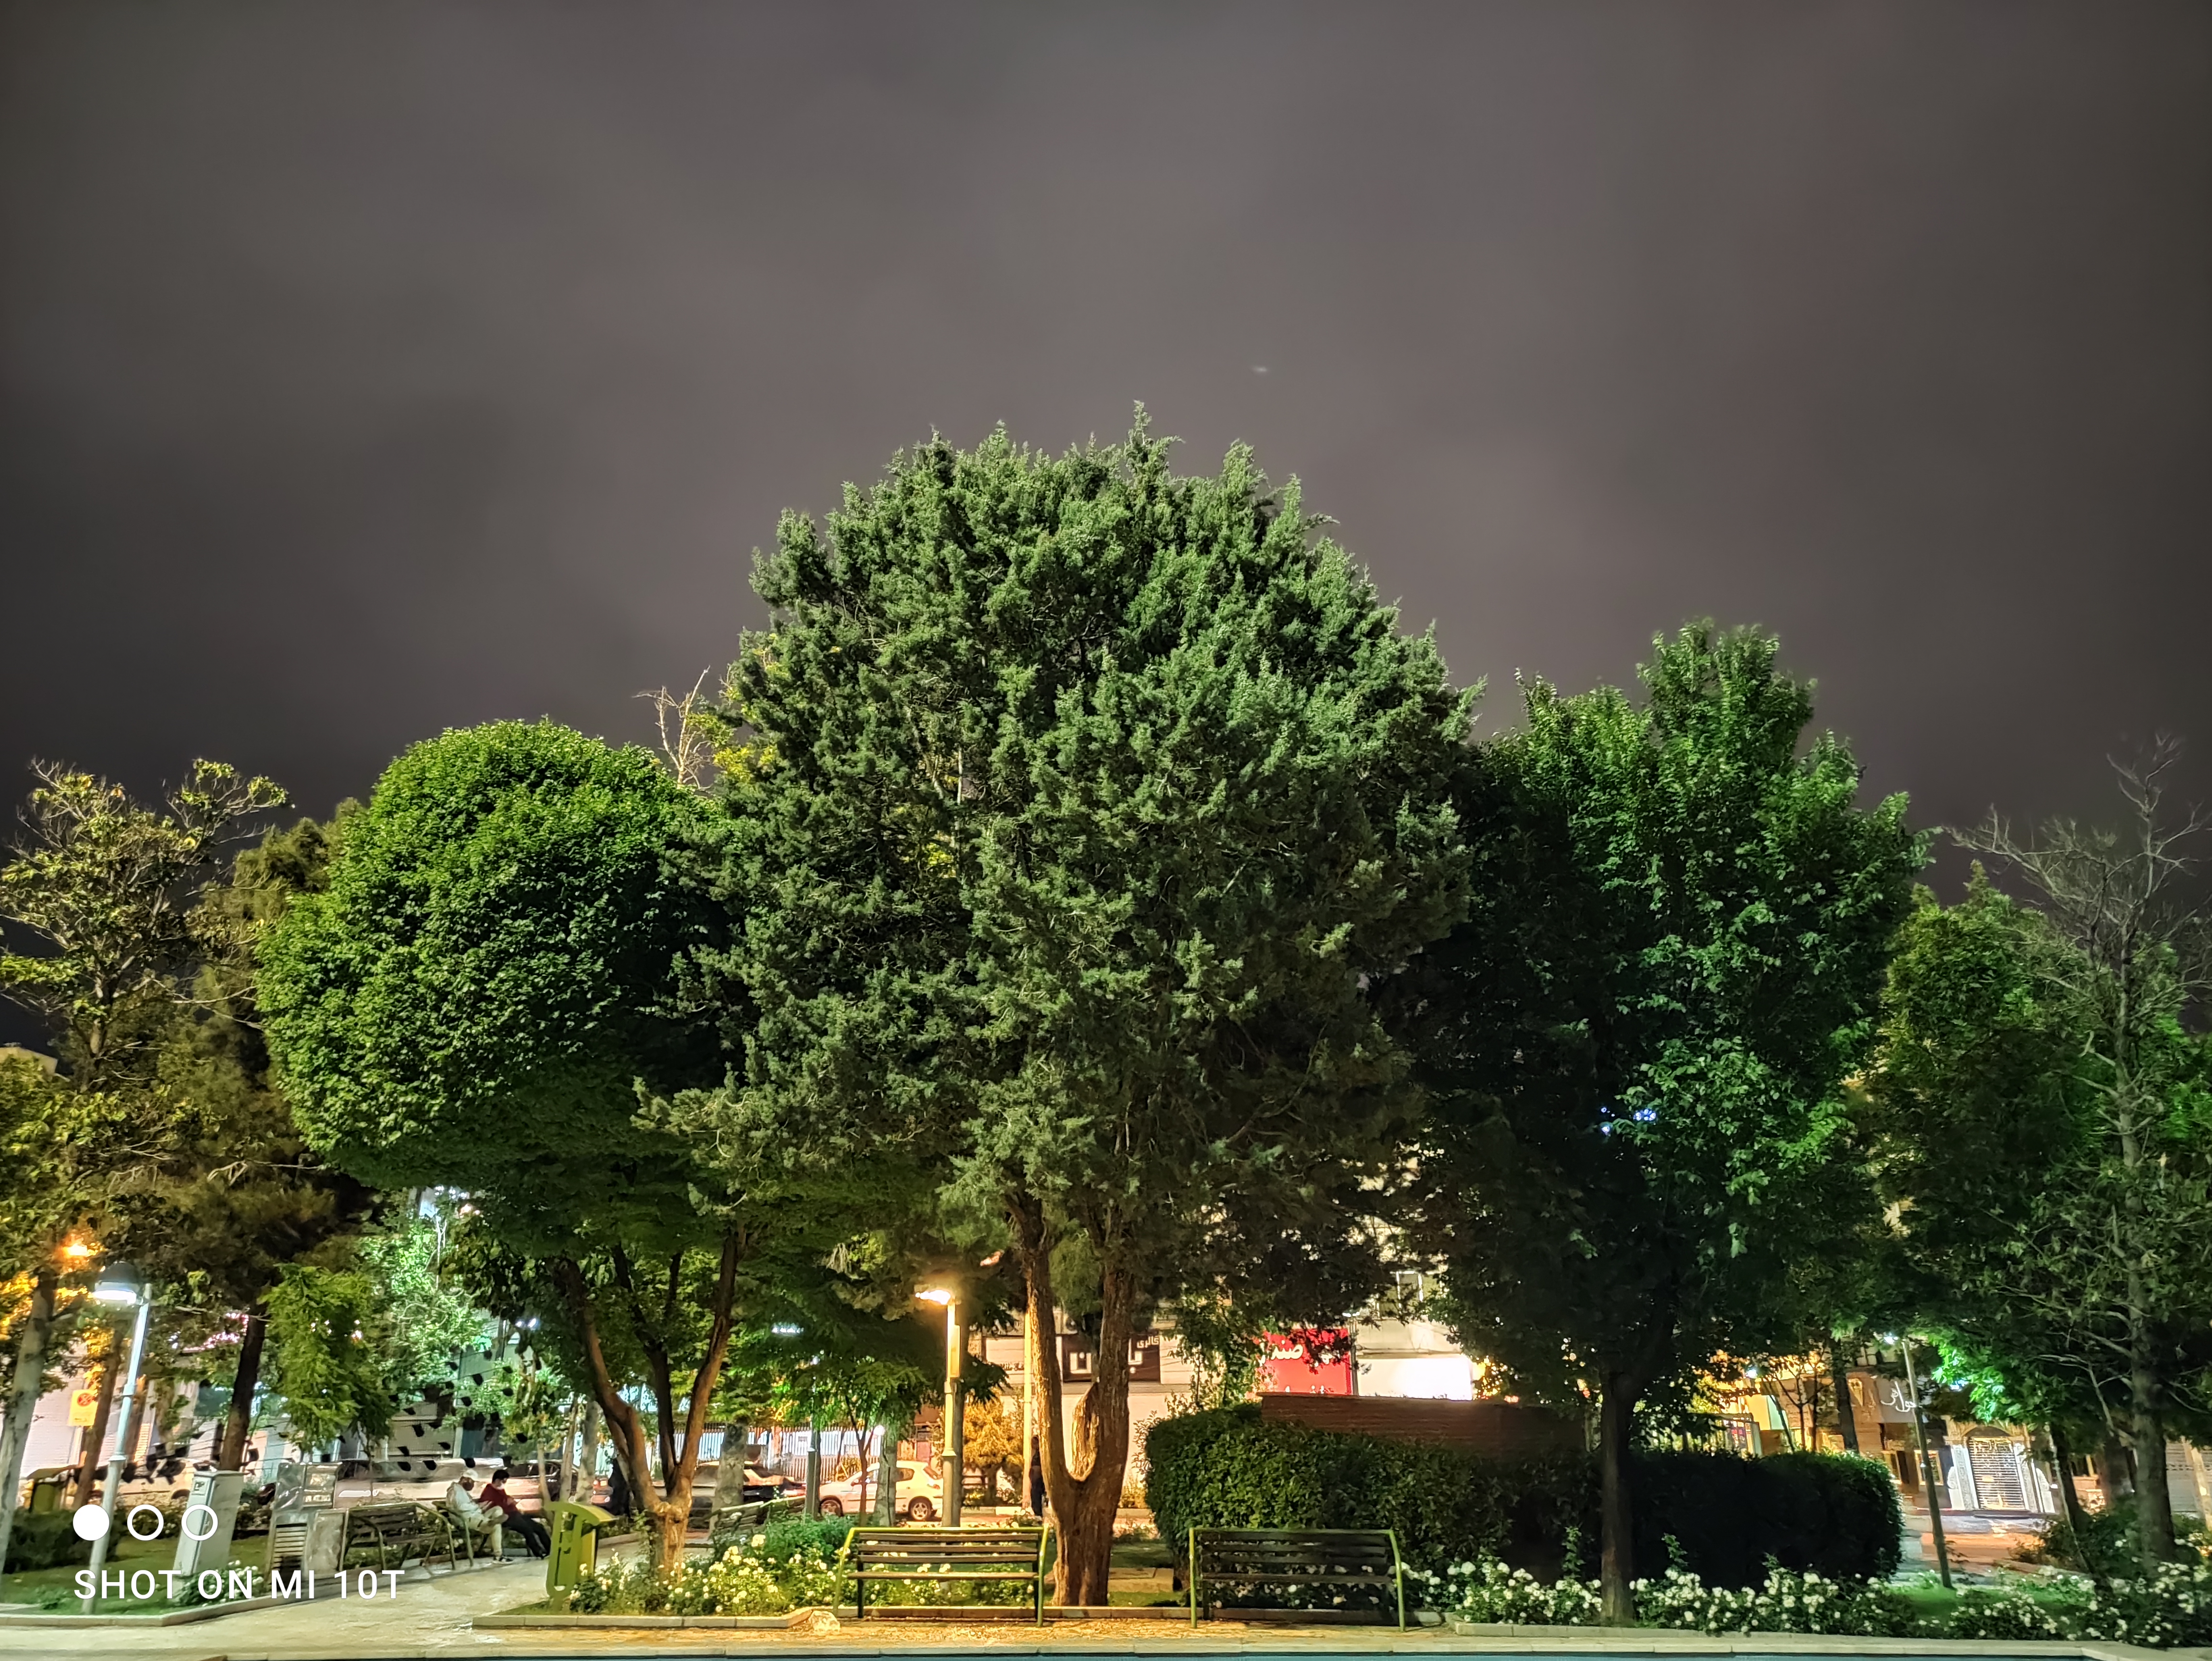 نمونه عکس دوربین اصلی شیائومی می 10 تی - درختان در پارک با حالت عکاسی در شب